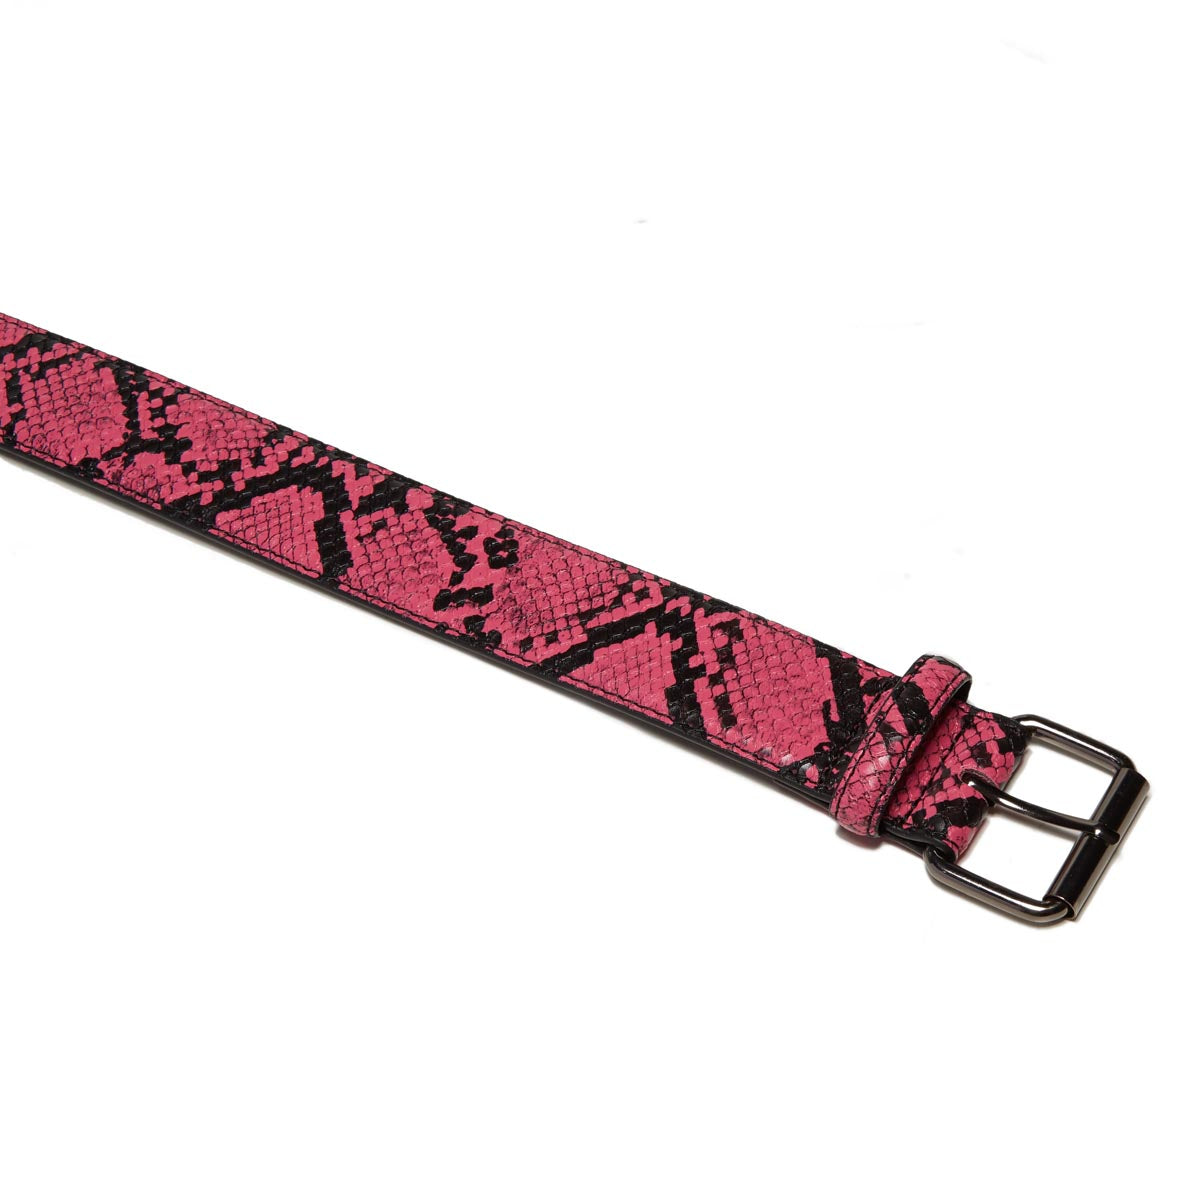 Loosey Snake Skin Belt - Pink image 2